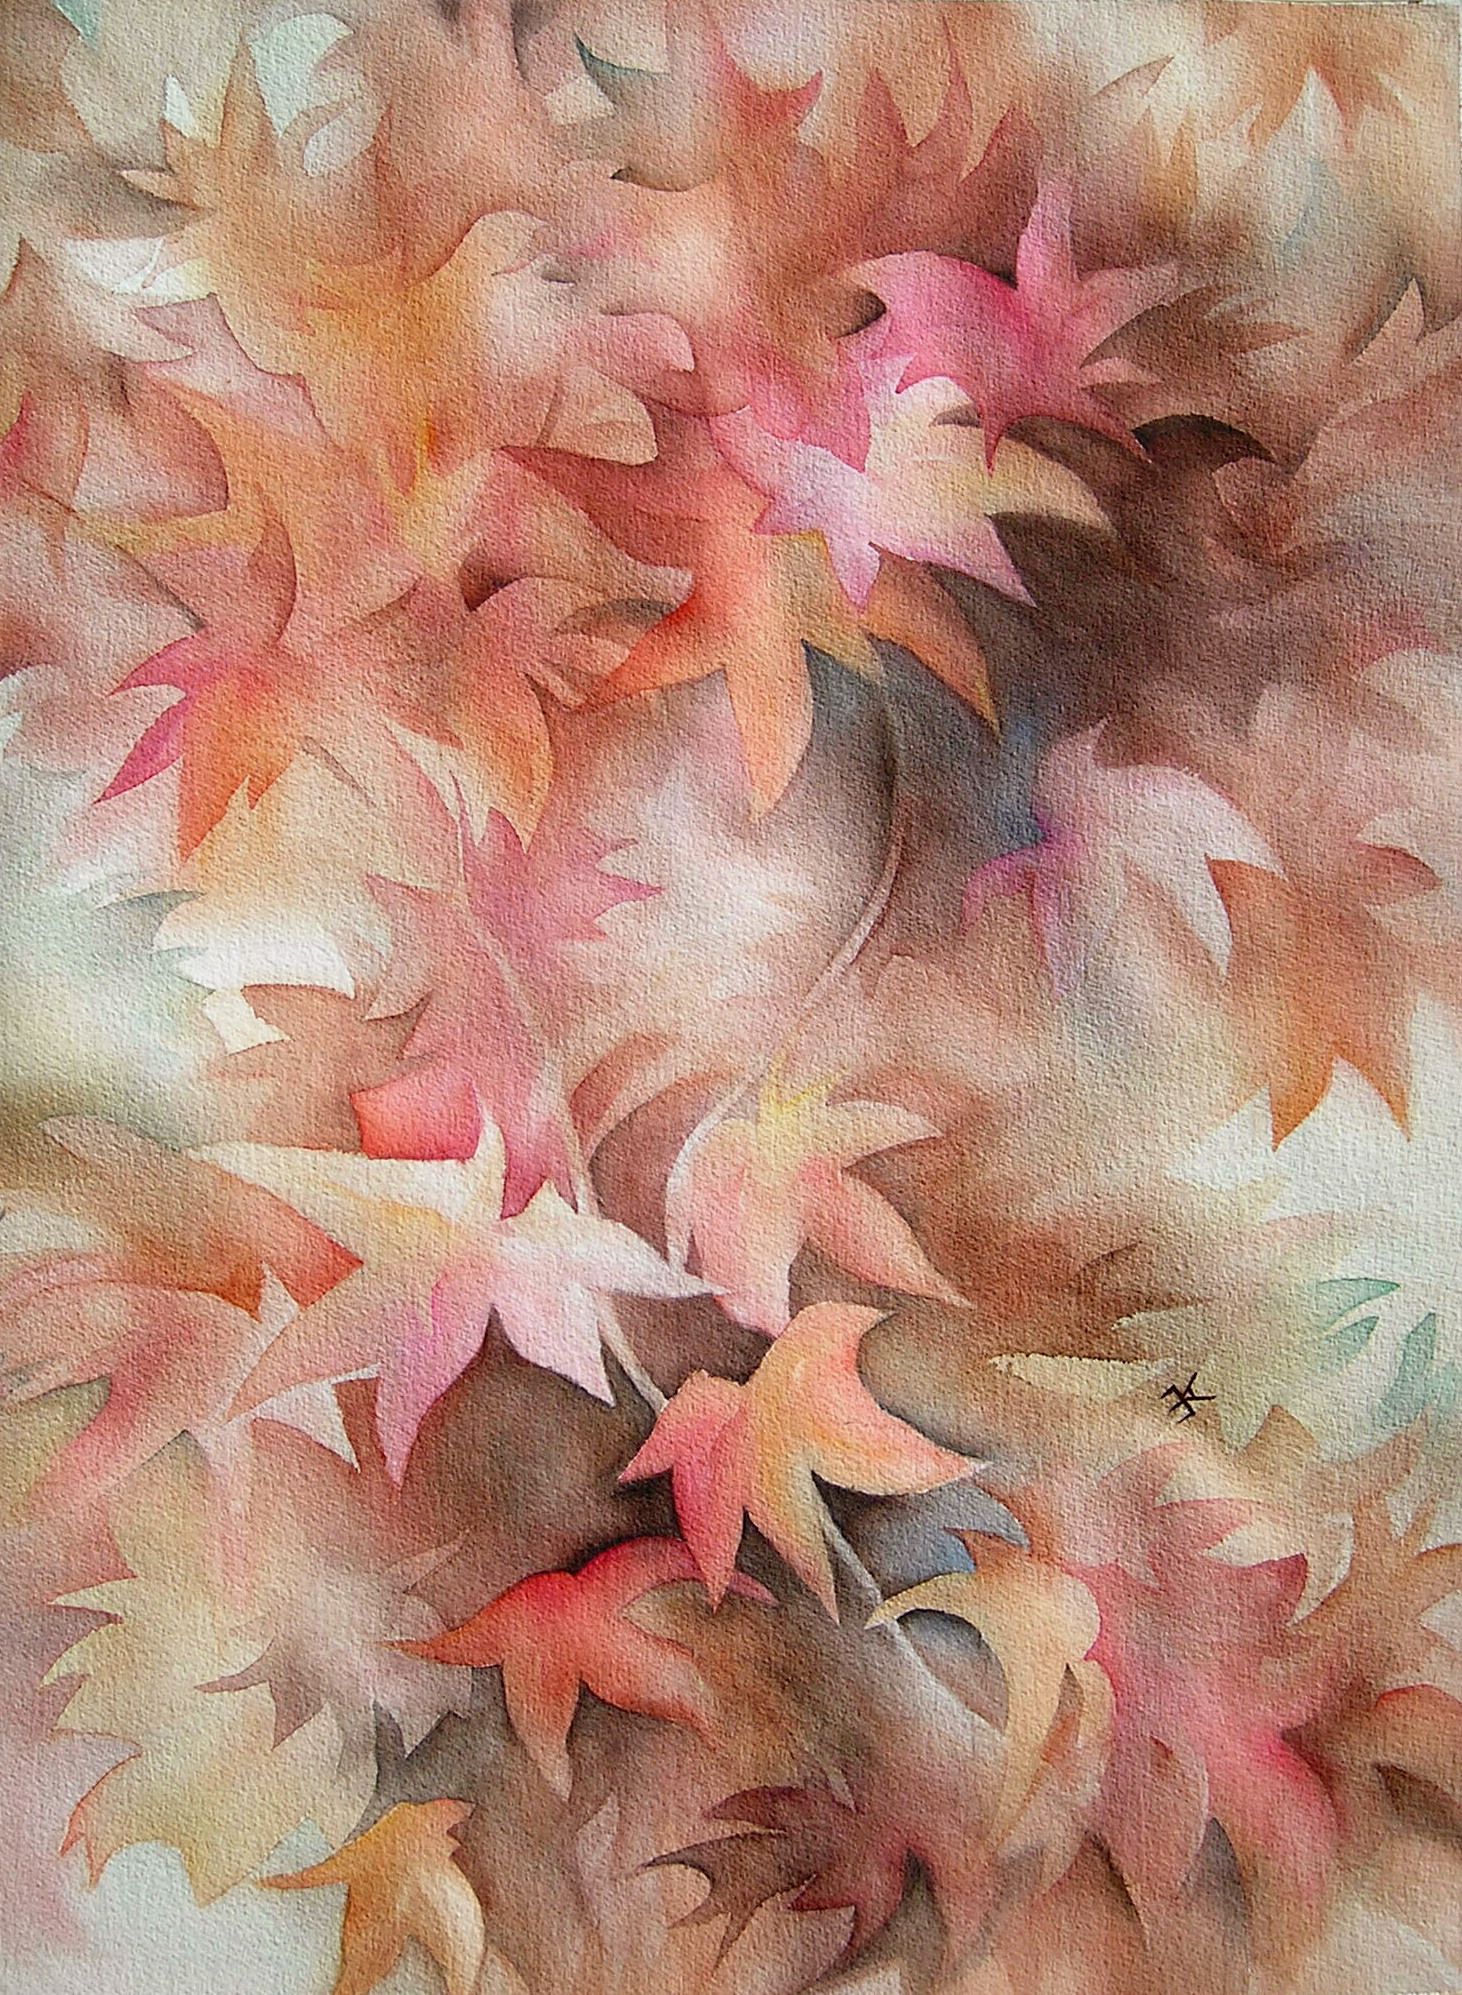 Dancing Leaves painting